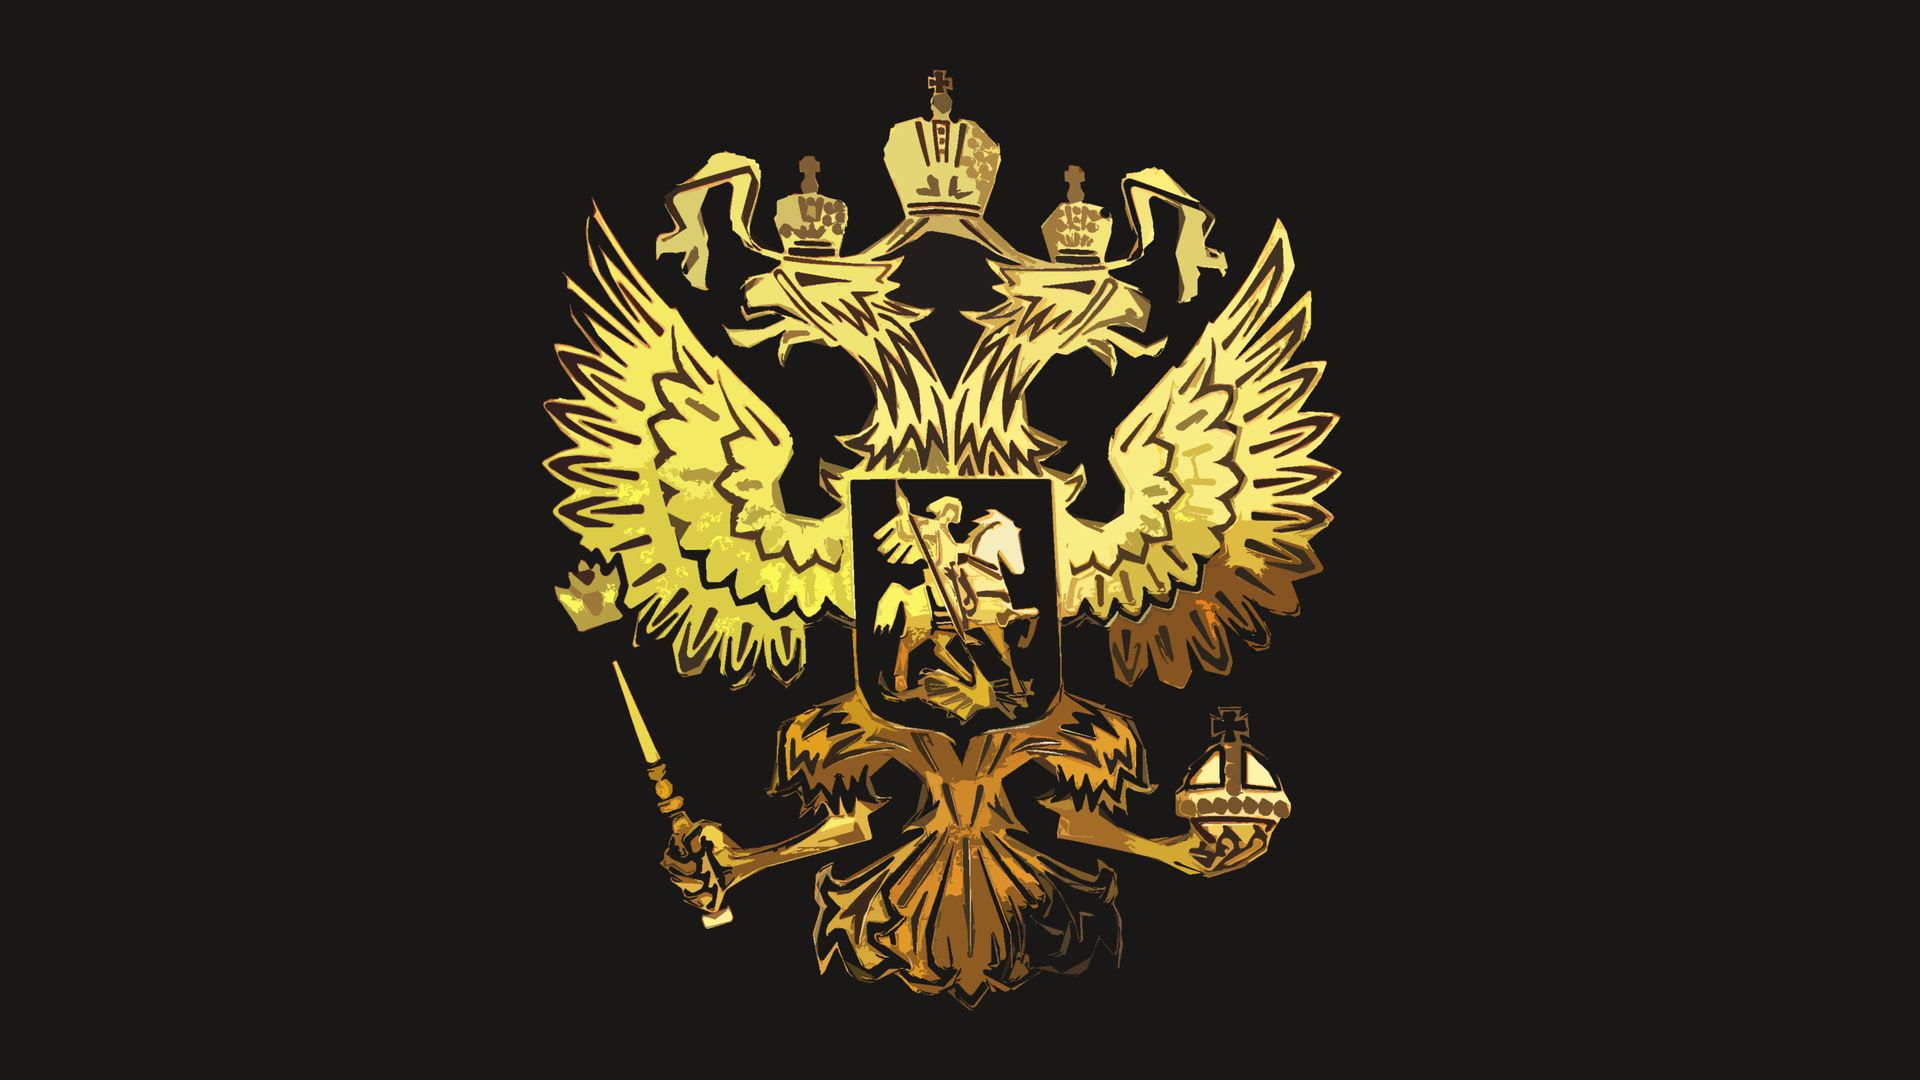 Eagle Emblem Wallpaper. Fire Emblem